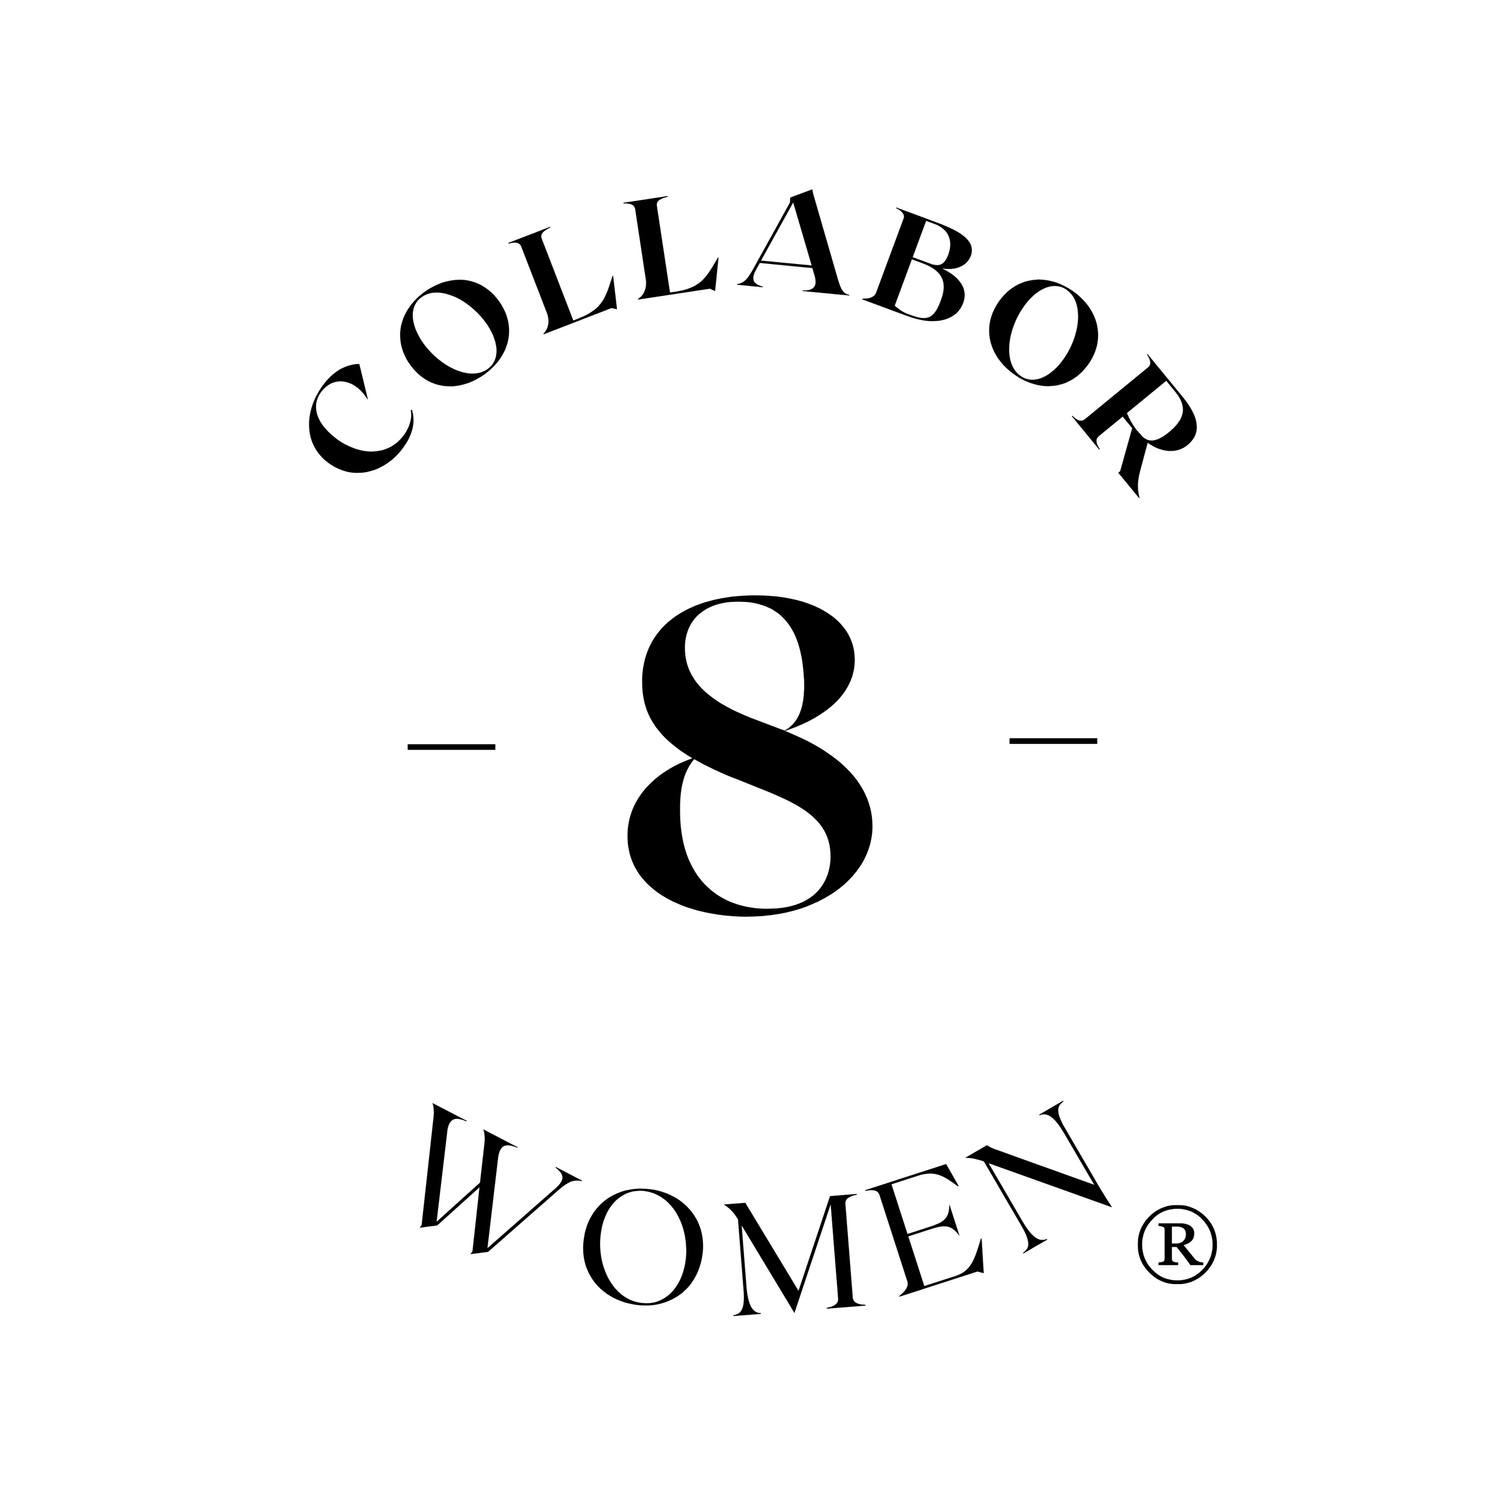 collabor8women